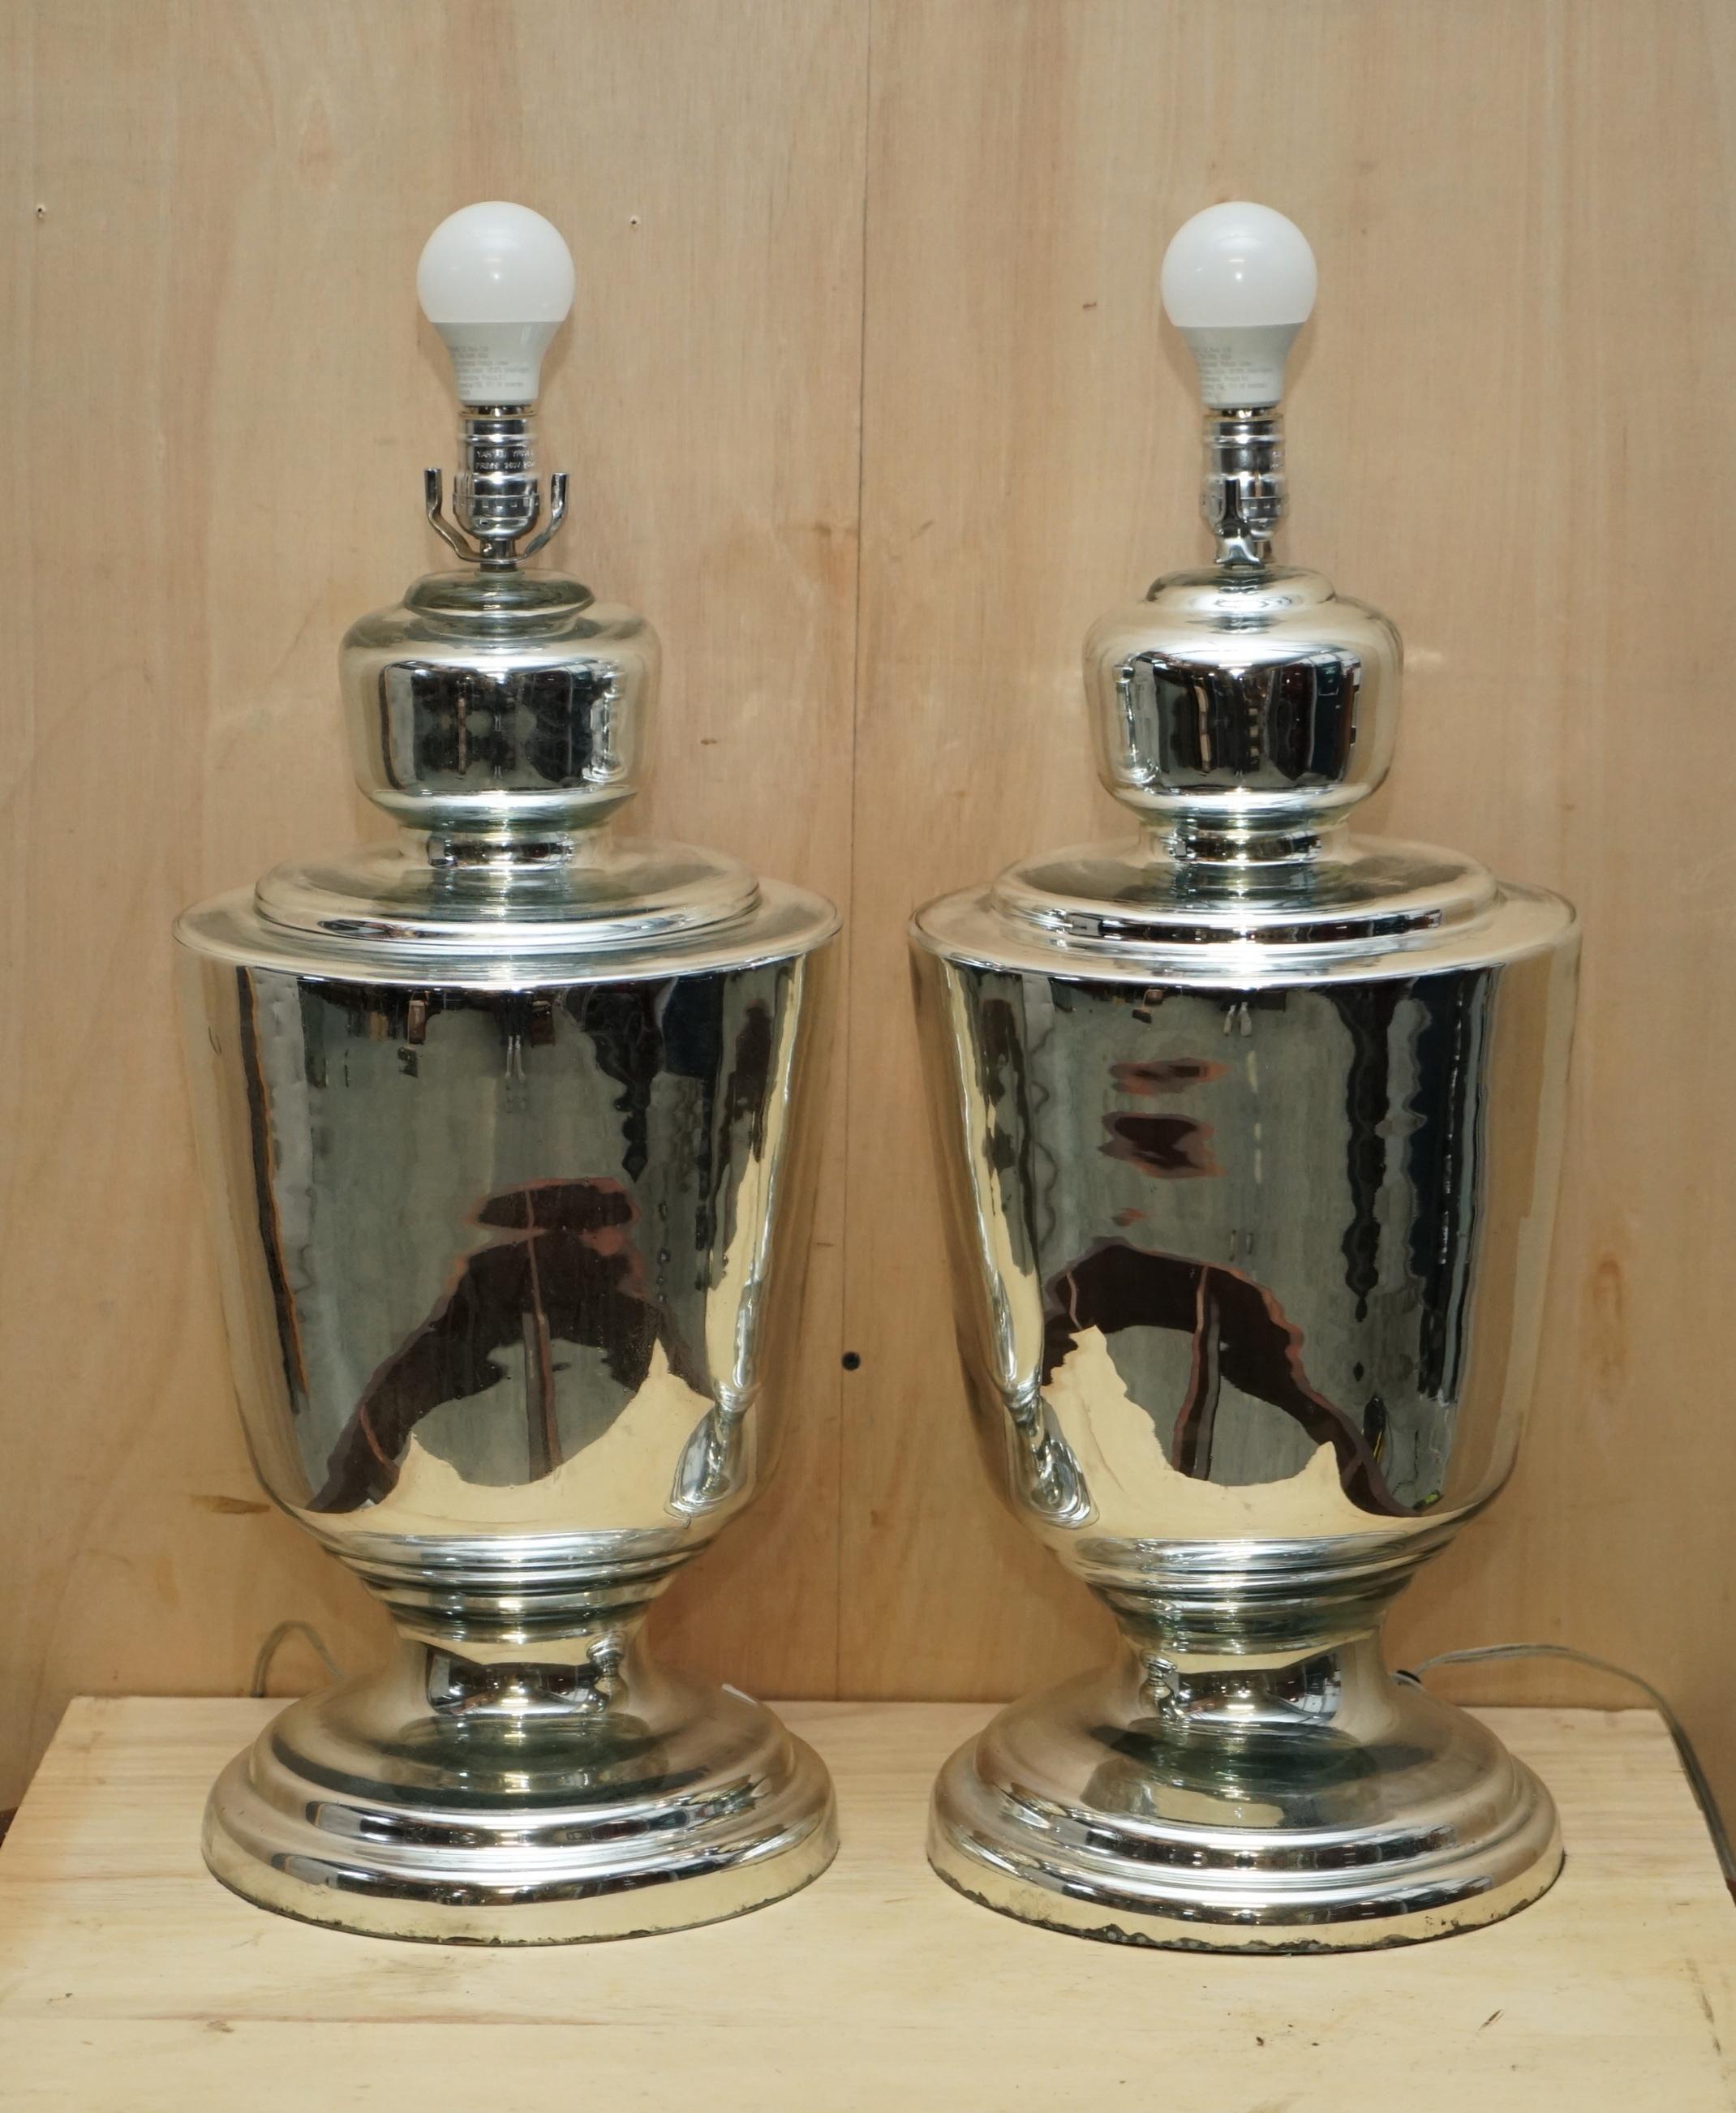 Nous sommes ravis d'offrir à la vente cette paire de lampes de table vintage en verre renard avec miroir et grande urne.

Ces lampes proviennent d'un très bon antiquaire en Belgique, il a un client qui achète des luminaires italiens anciens pour